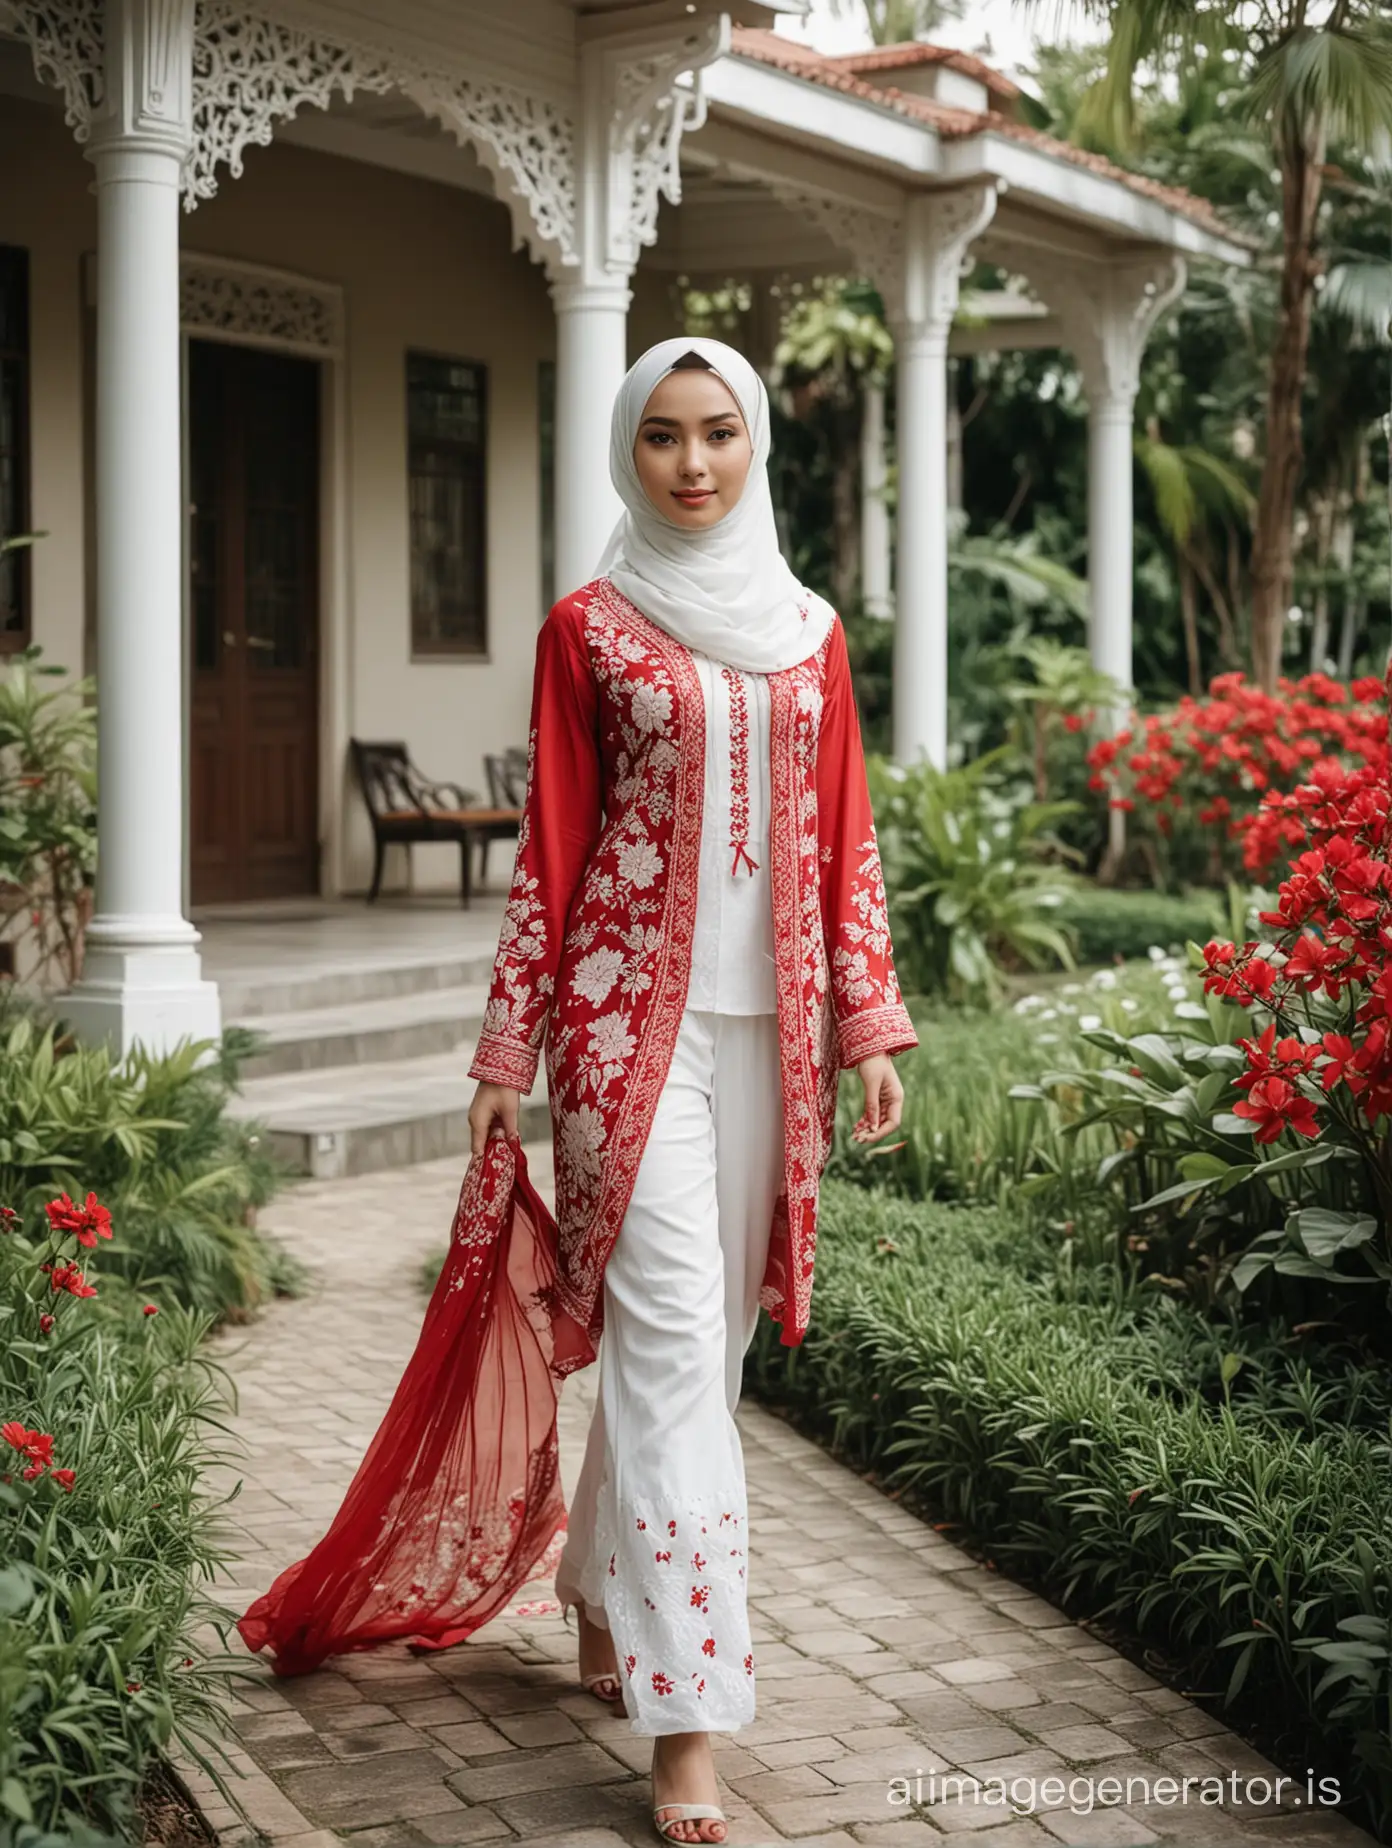 Elegant-Hijabi-Woman-Strolling-in-Enchanting-Garden-Setting